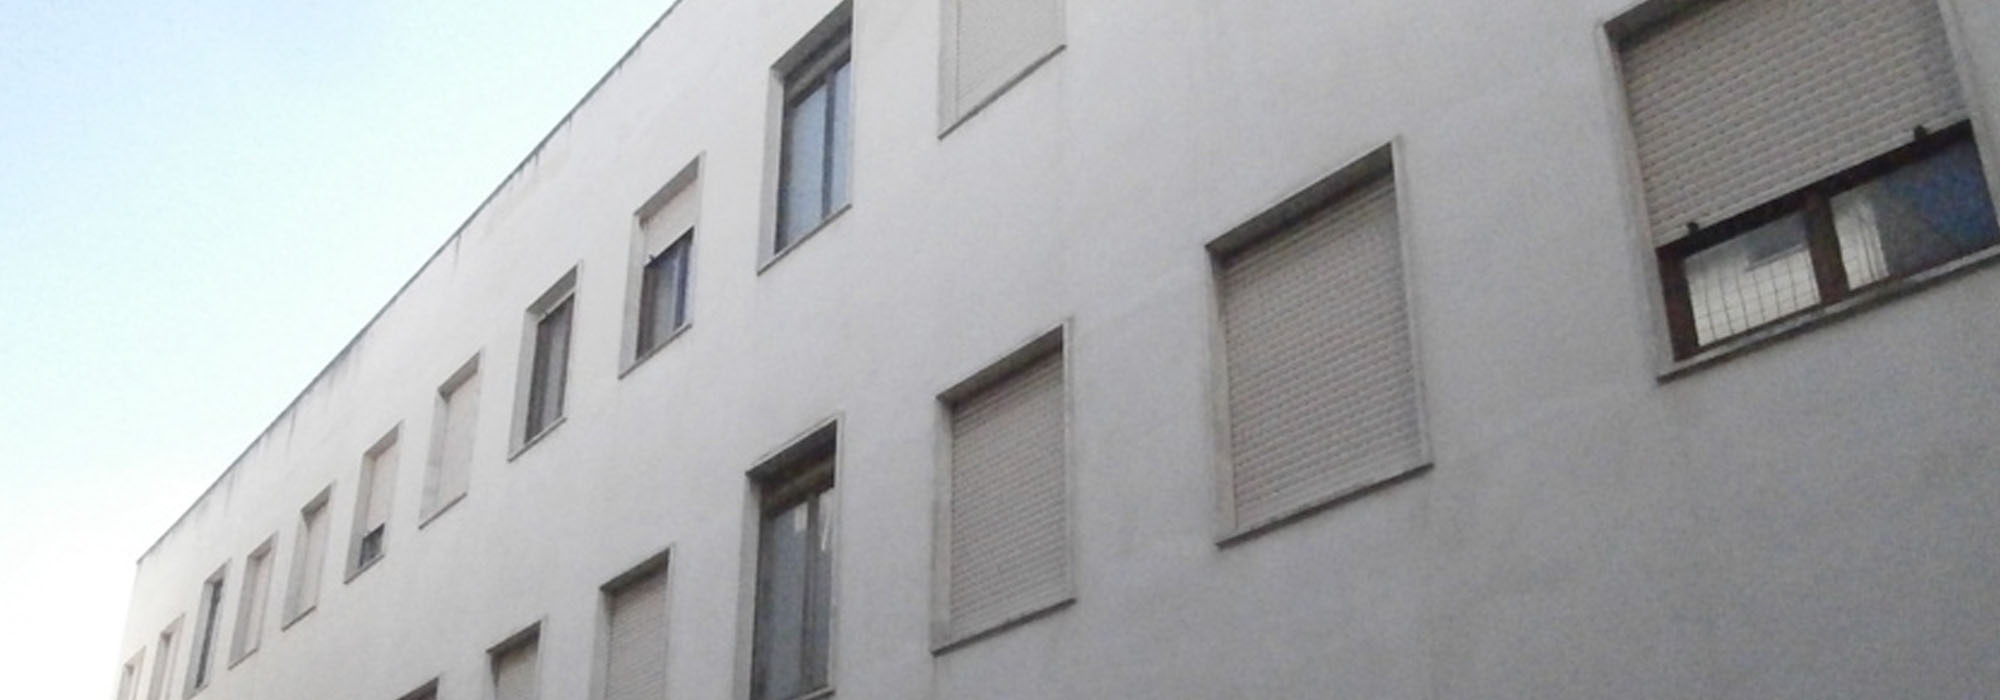 Appartamenti Piazza S.Oronzo